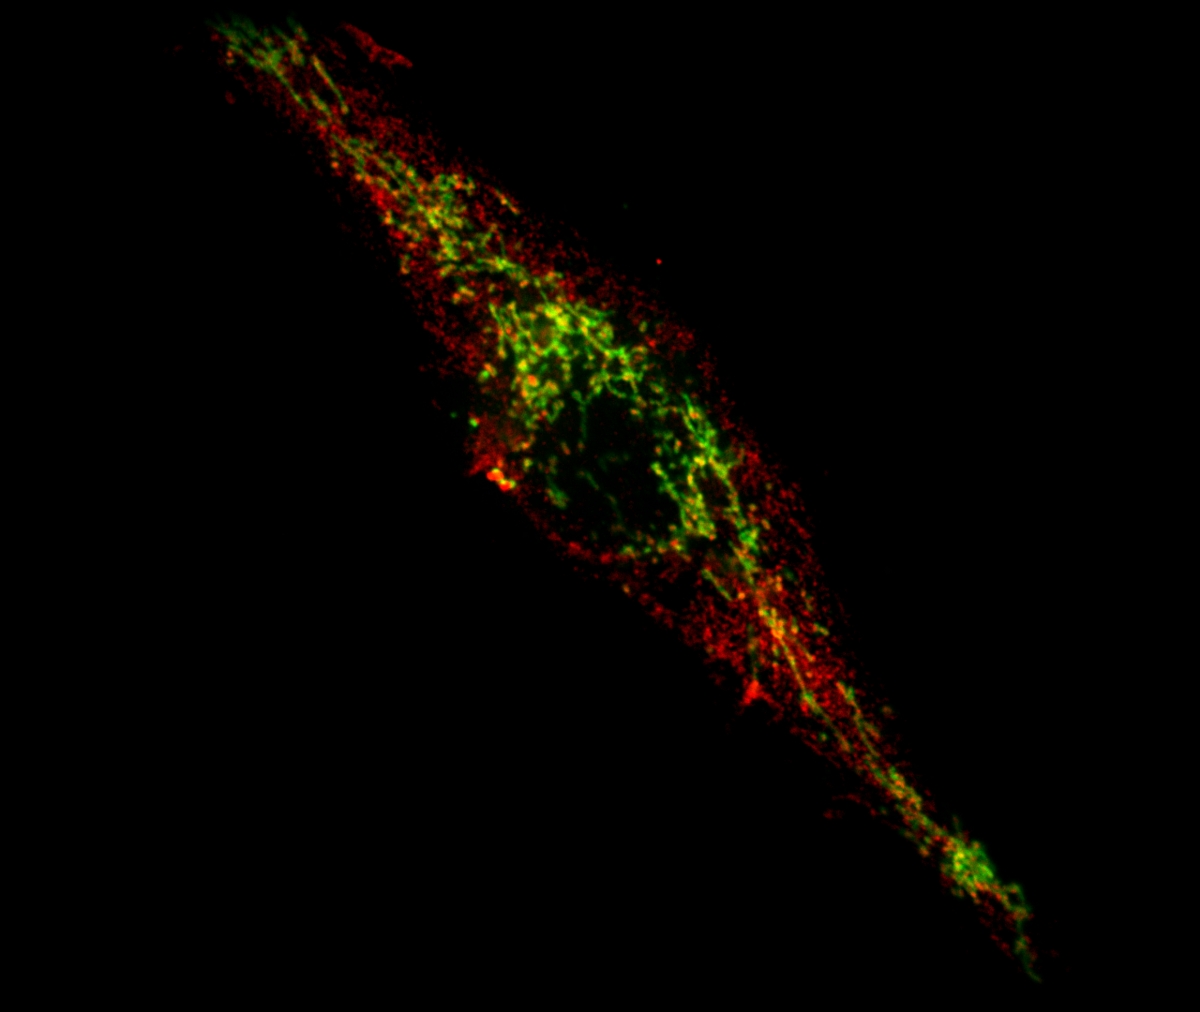 Une cellule où est absente la protéine PINK1 liée à la maladie de Parkinson s'apprête à présenter des antigènes mitochondriaux (en rouge) à sa surface pour allerter le système immunitaire. Les mitochondries intactes sont observées en vert.